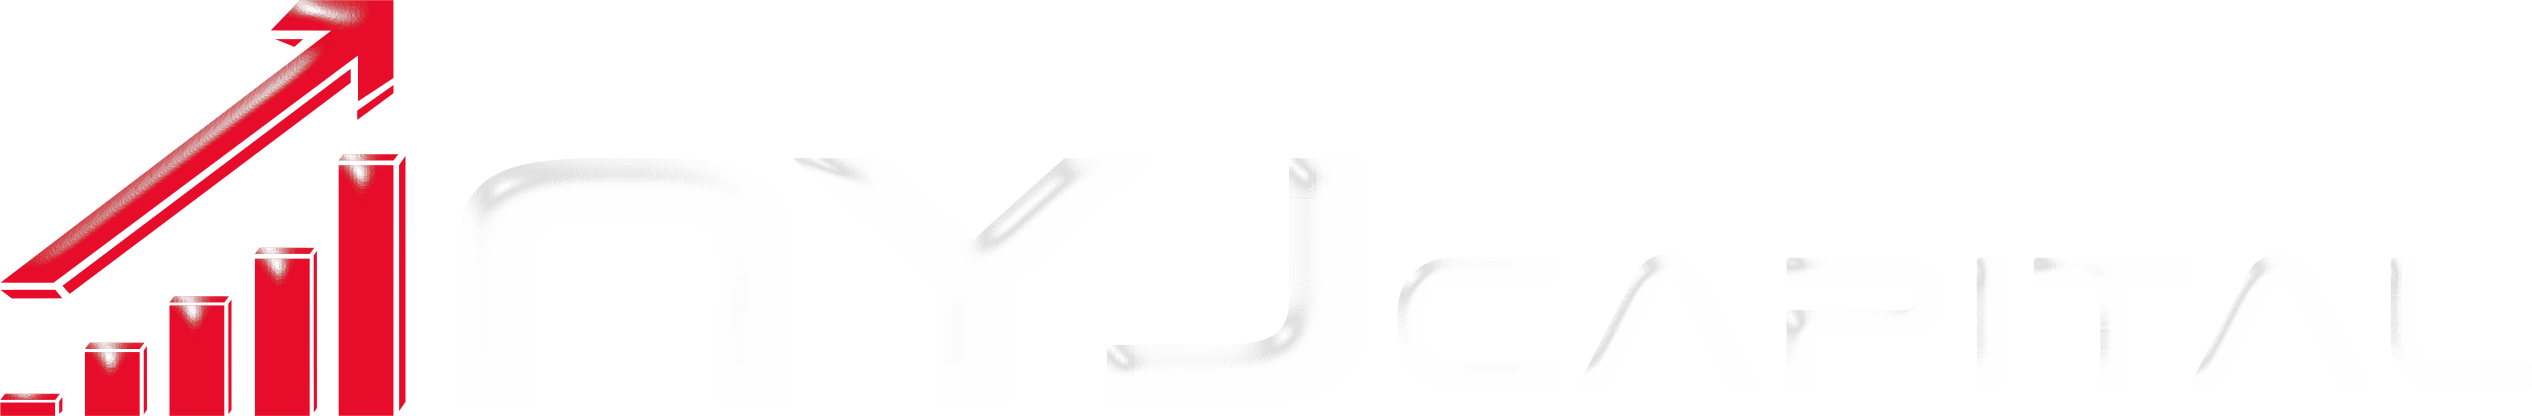 nyj capital logo